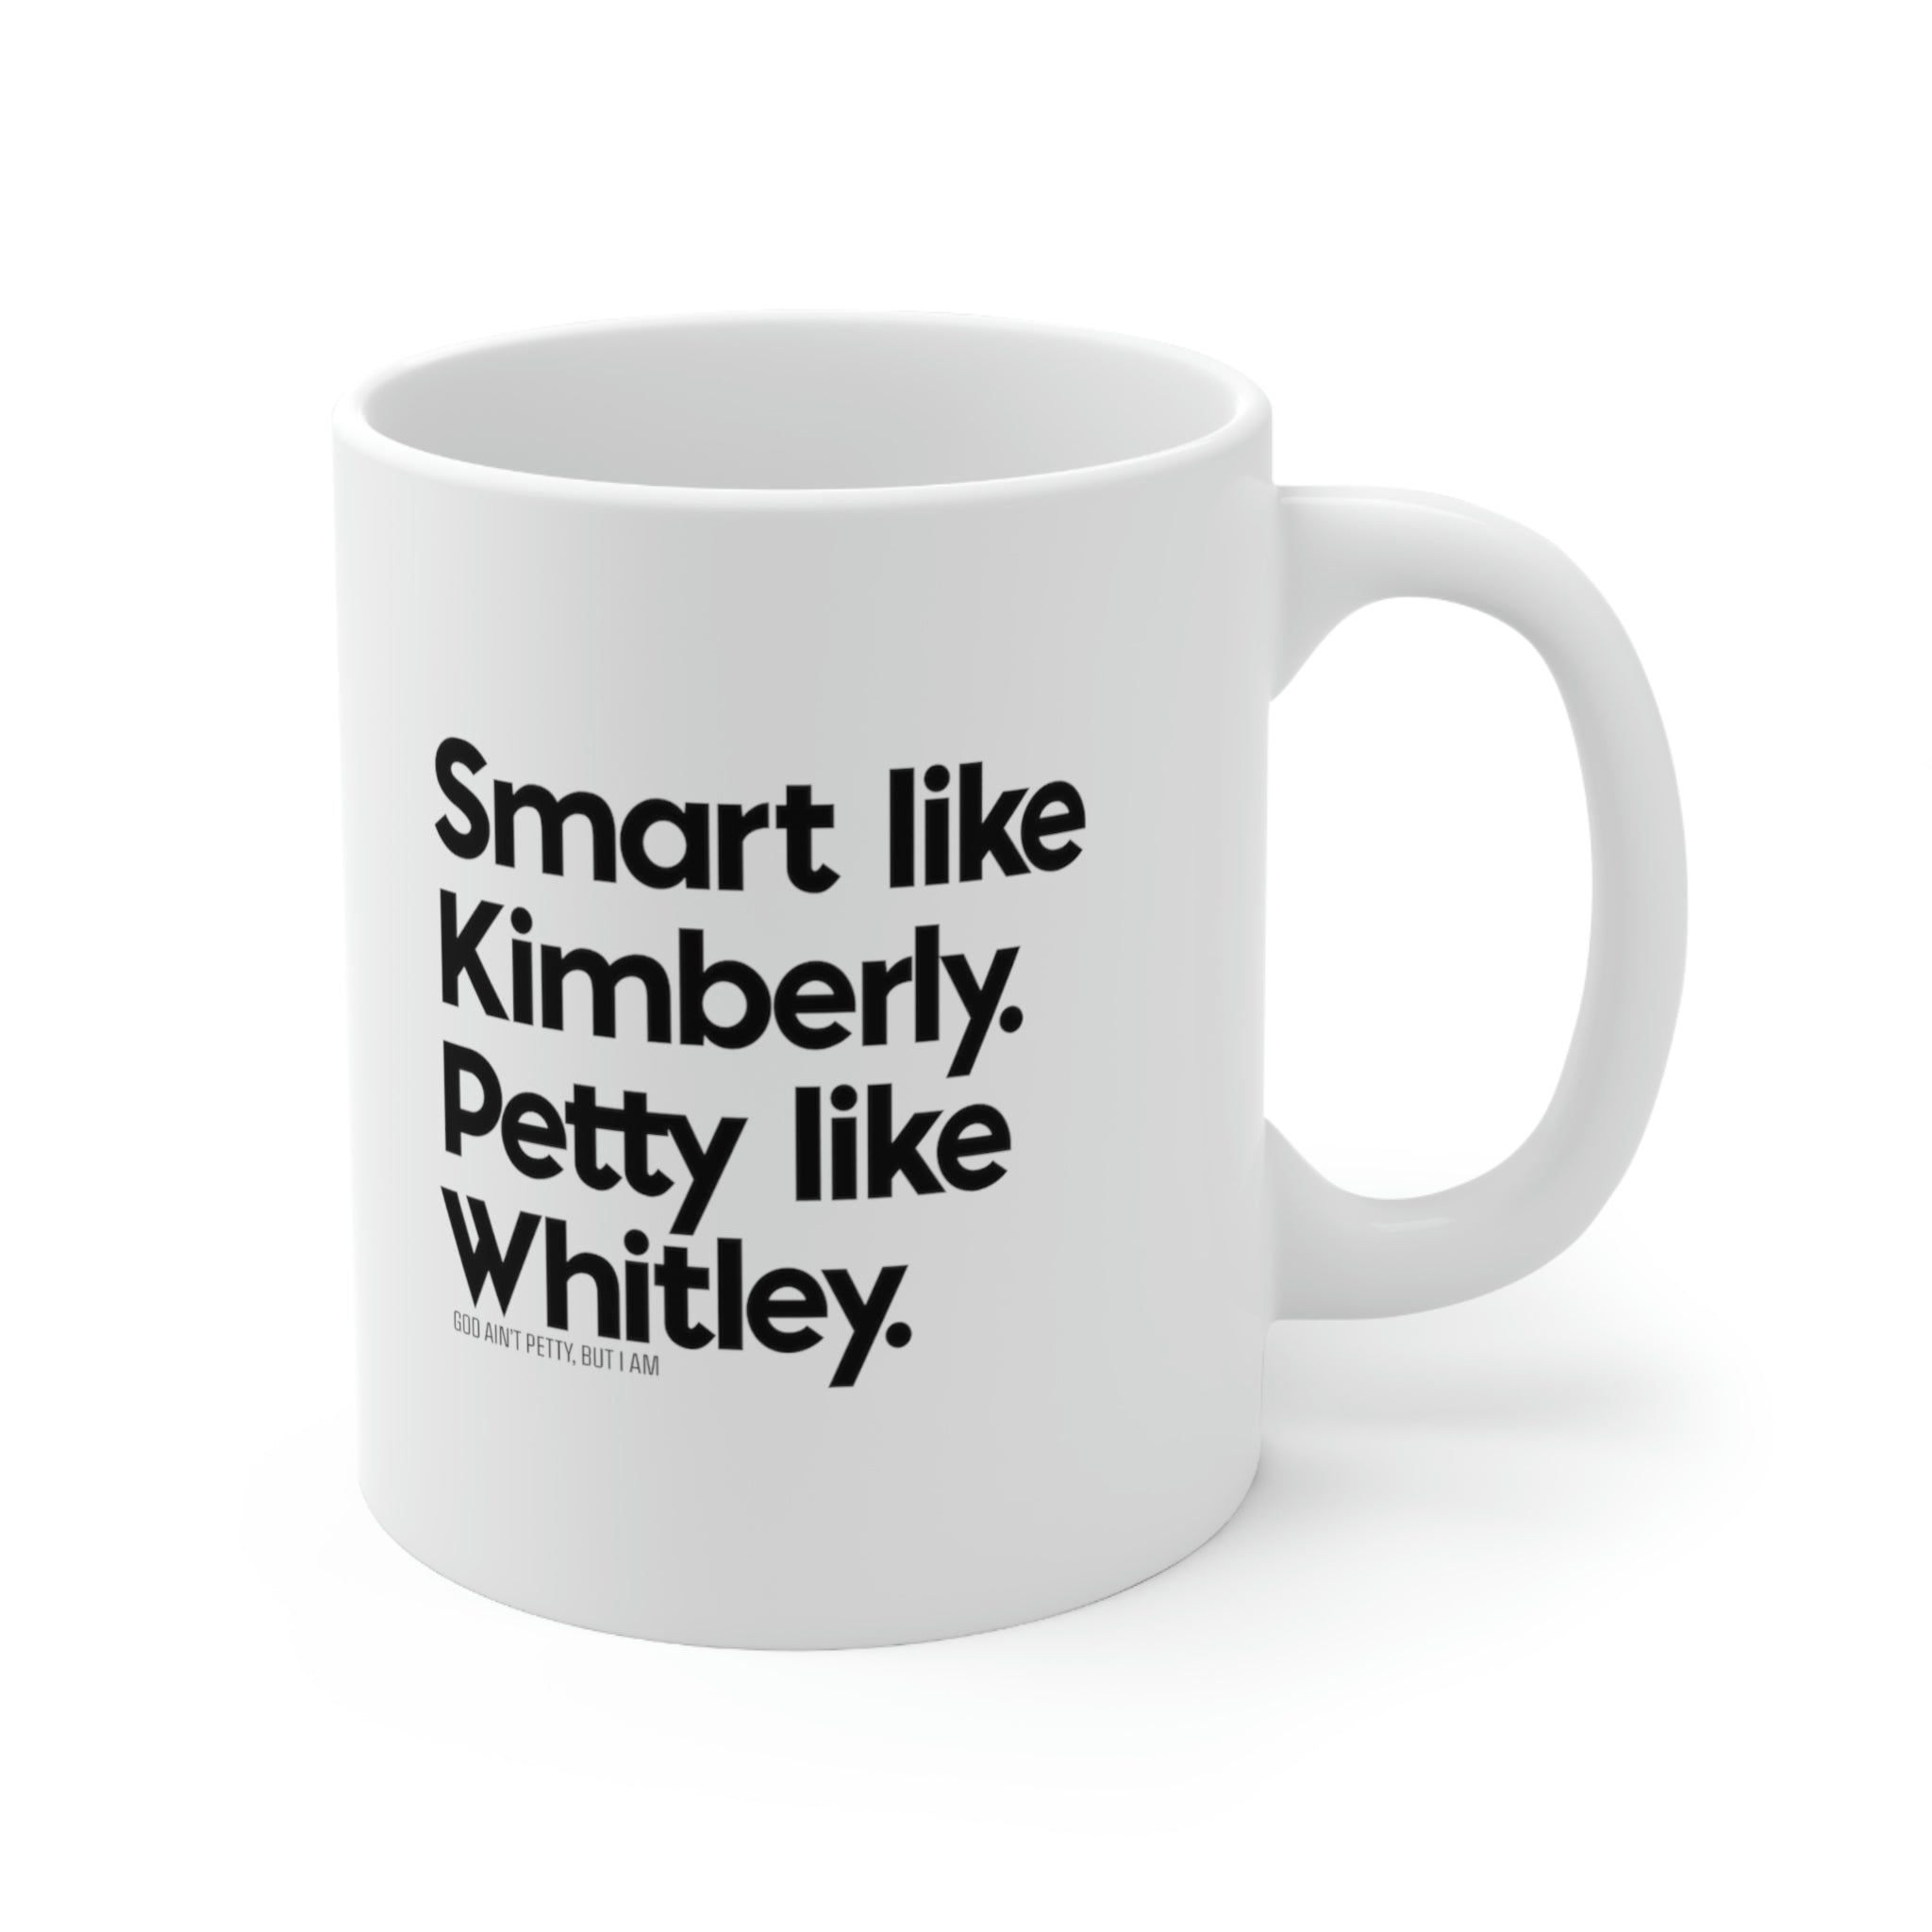 Smart like Kimberly. Petty Like Whitley Mug 11oz (White/Black)-Mug-The Original God Ain't Petty But I Am